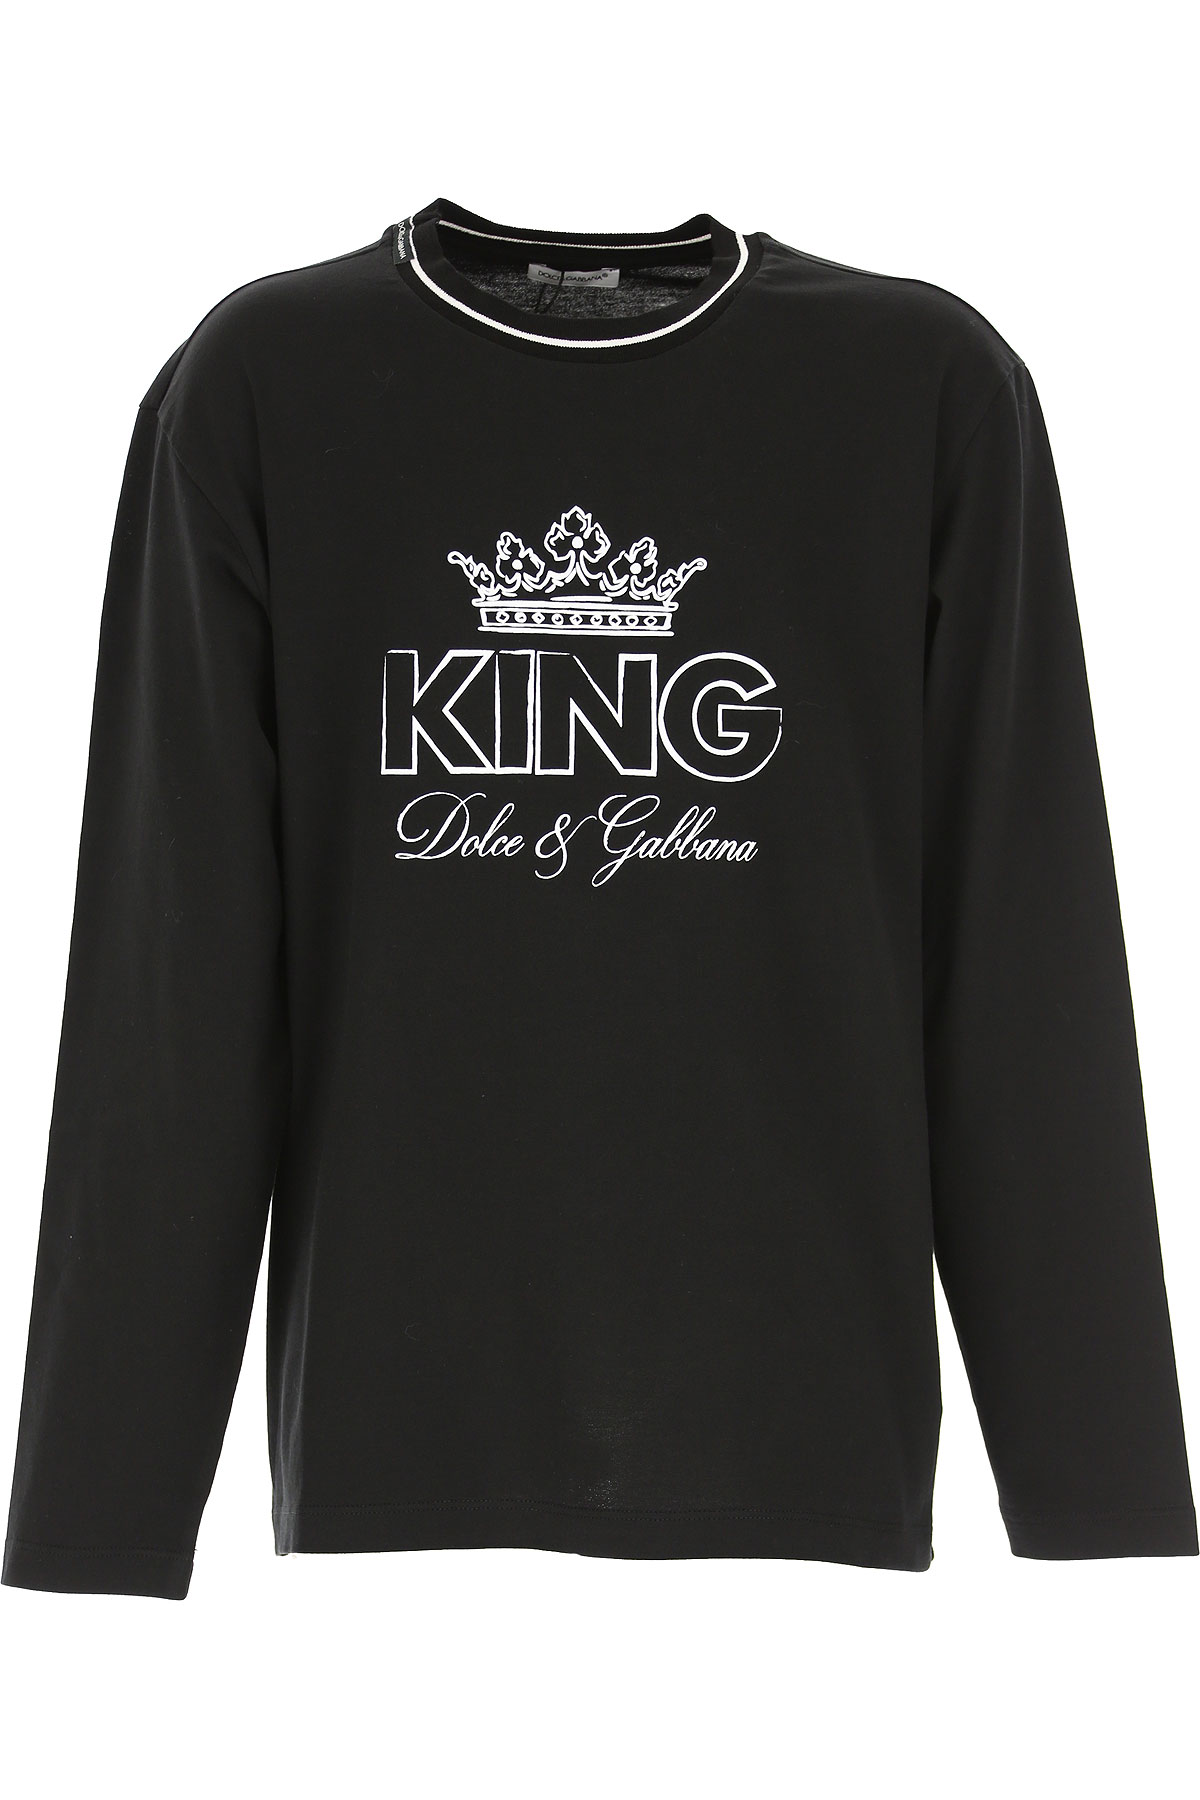 Dolce & Gabbana Kinder T-Shirt für Jungen Günstig im Sale, Schwarz, Baumwolle, 2017, 10Y 3Y 4Y 6Y 8Y